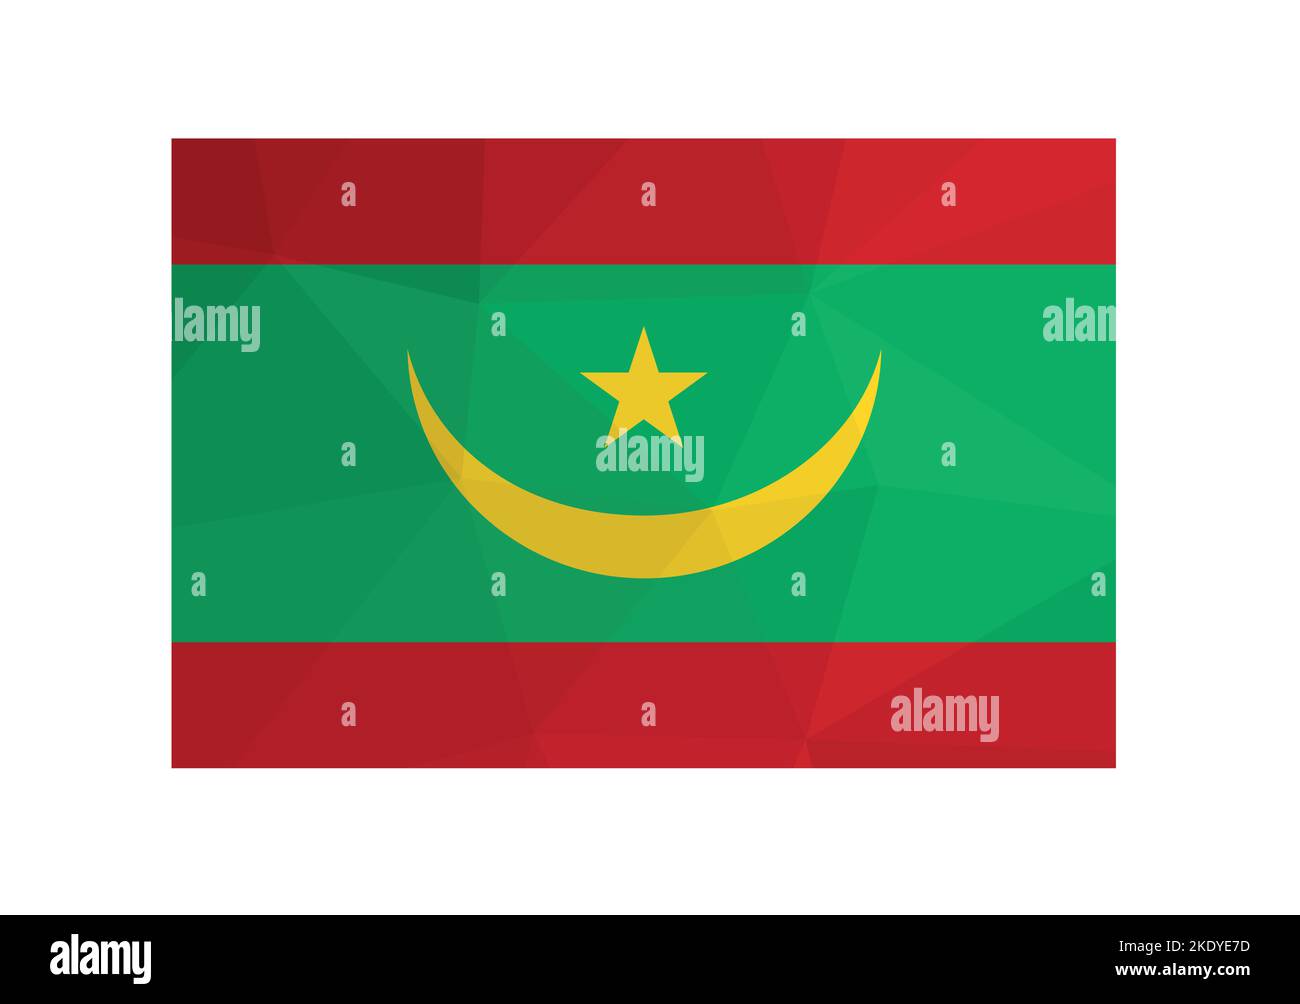 Illustration vectorielle. ensign officiel de Mauritanie. Drapeau national avec des rayures rouges et vertes et croissant jaune, étoile. Design créatif en polyester bas Illustration de Vecteur